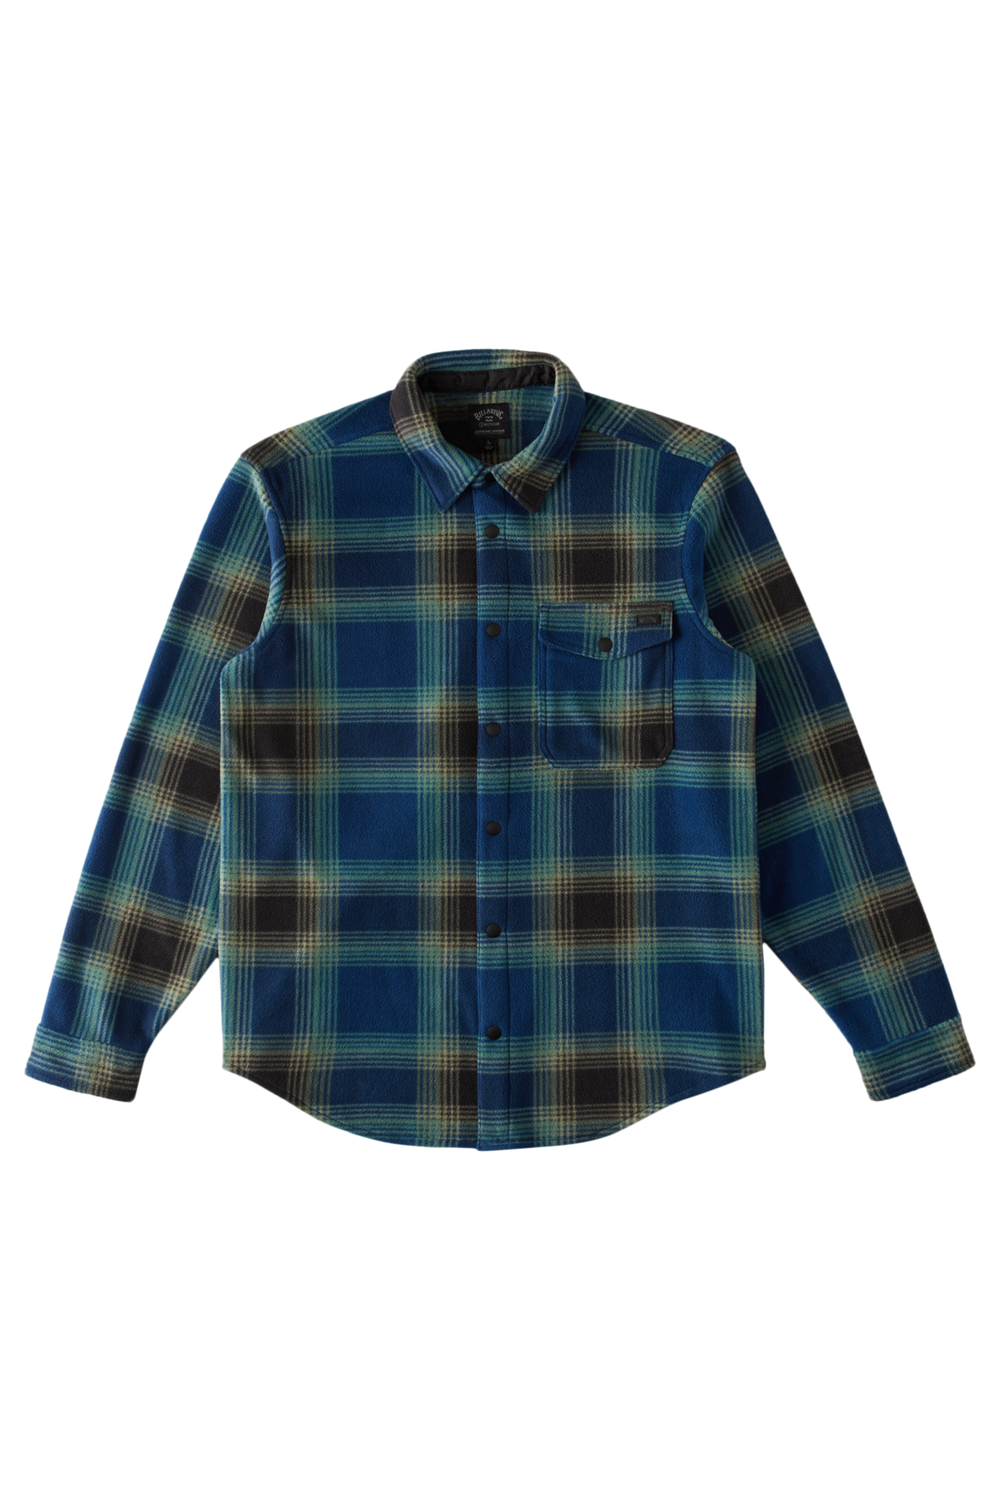 Billabong Furnace Flannel Shirt Dark Blue